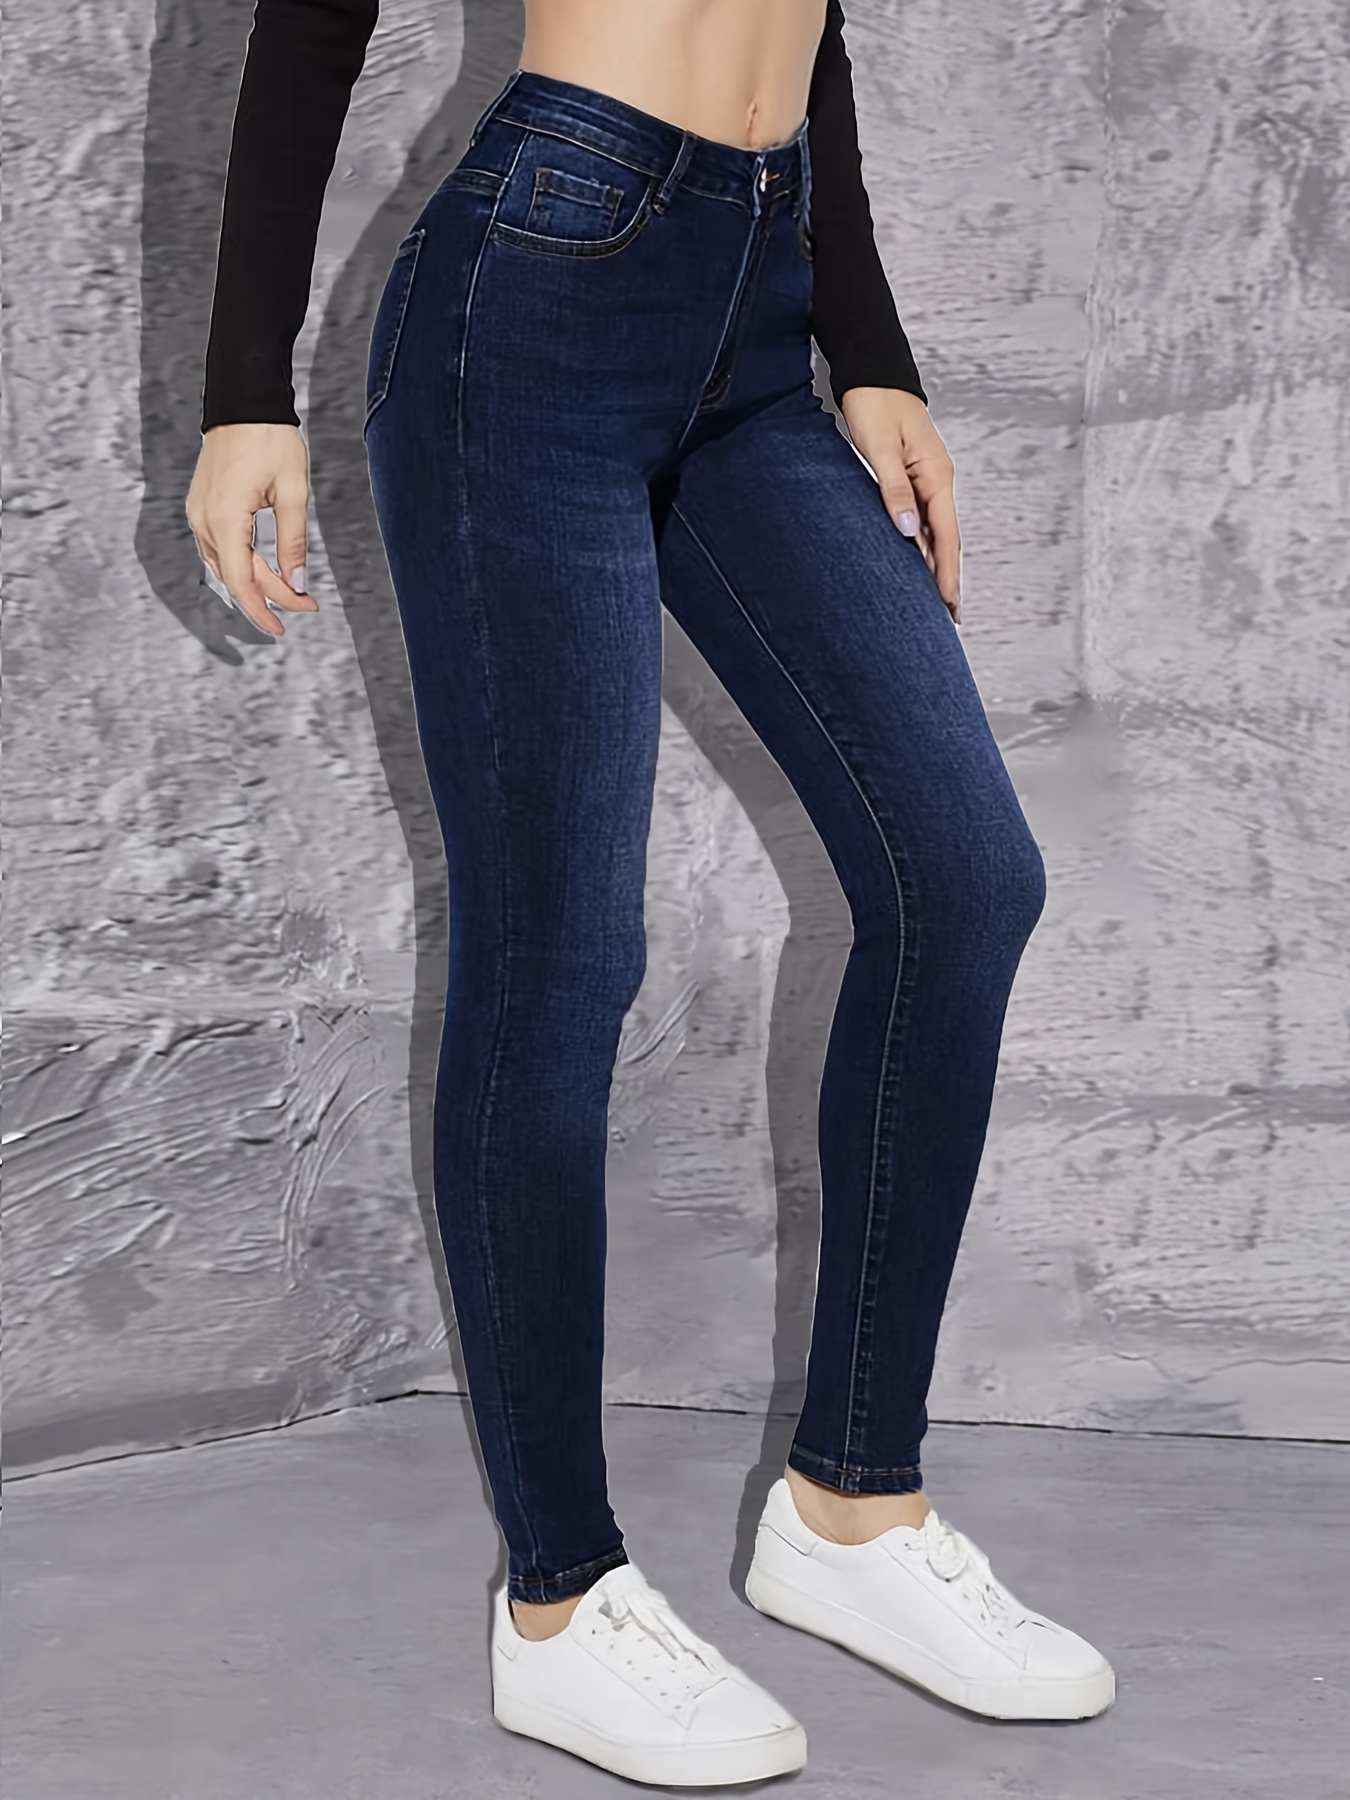 Jeans ajustados azul oscuro de tiro alto, pantalones de mezclilla ajustados  elásticos de diseño liso de cintura alta, jeans y ropa de mezclilla para m